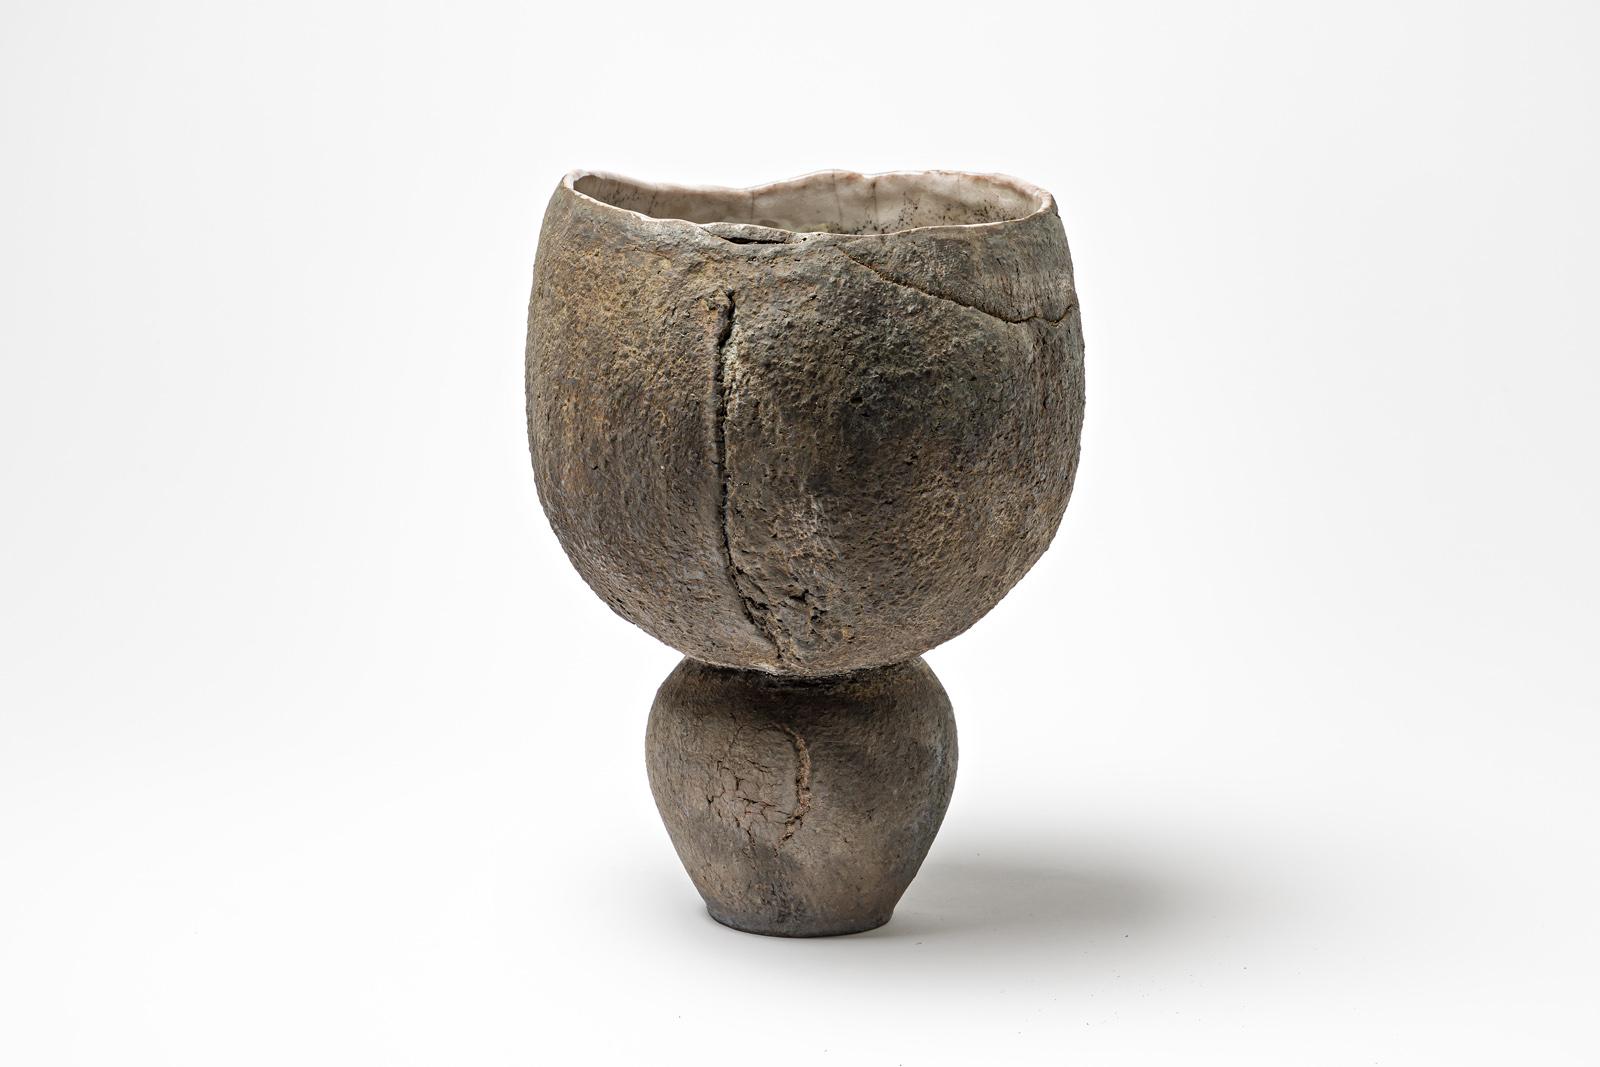 Schale mit Fuß aus glasierter Keramik mit perlweißer Innenseite von Gisèle Buthod-Garçon. Raku gebrannt. Künstlermonogramm unter dem Sockel. CIRCA 1980-1990.
H : 11' x 7,4' Zoll.